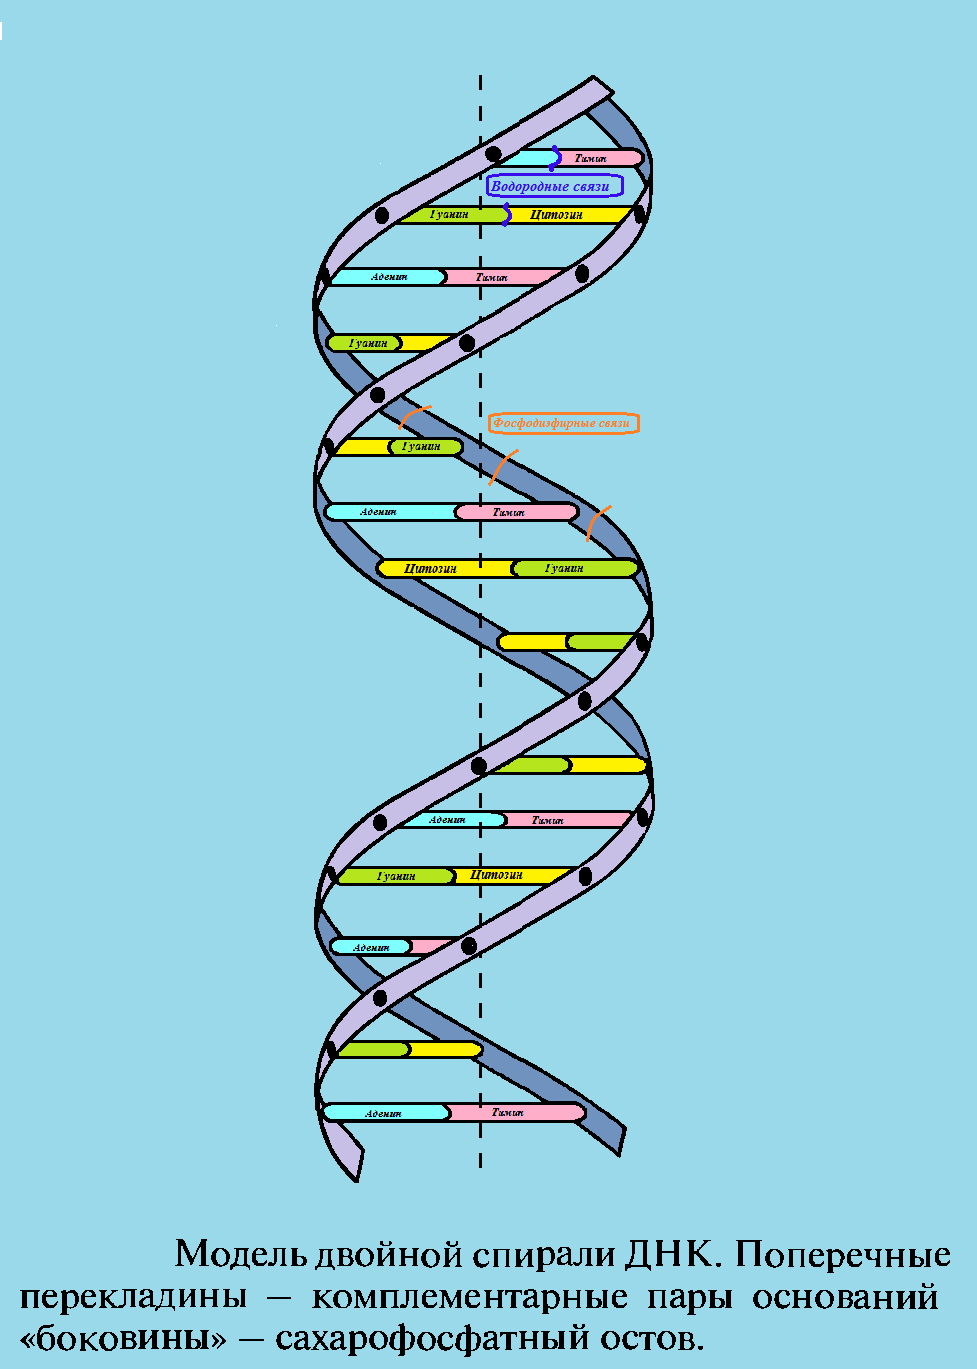 ДНК модель Уотсона-Крика